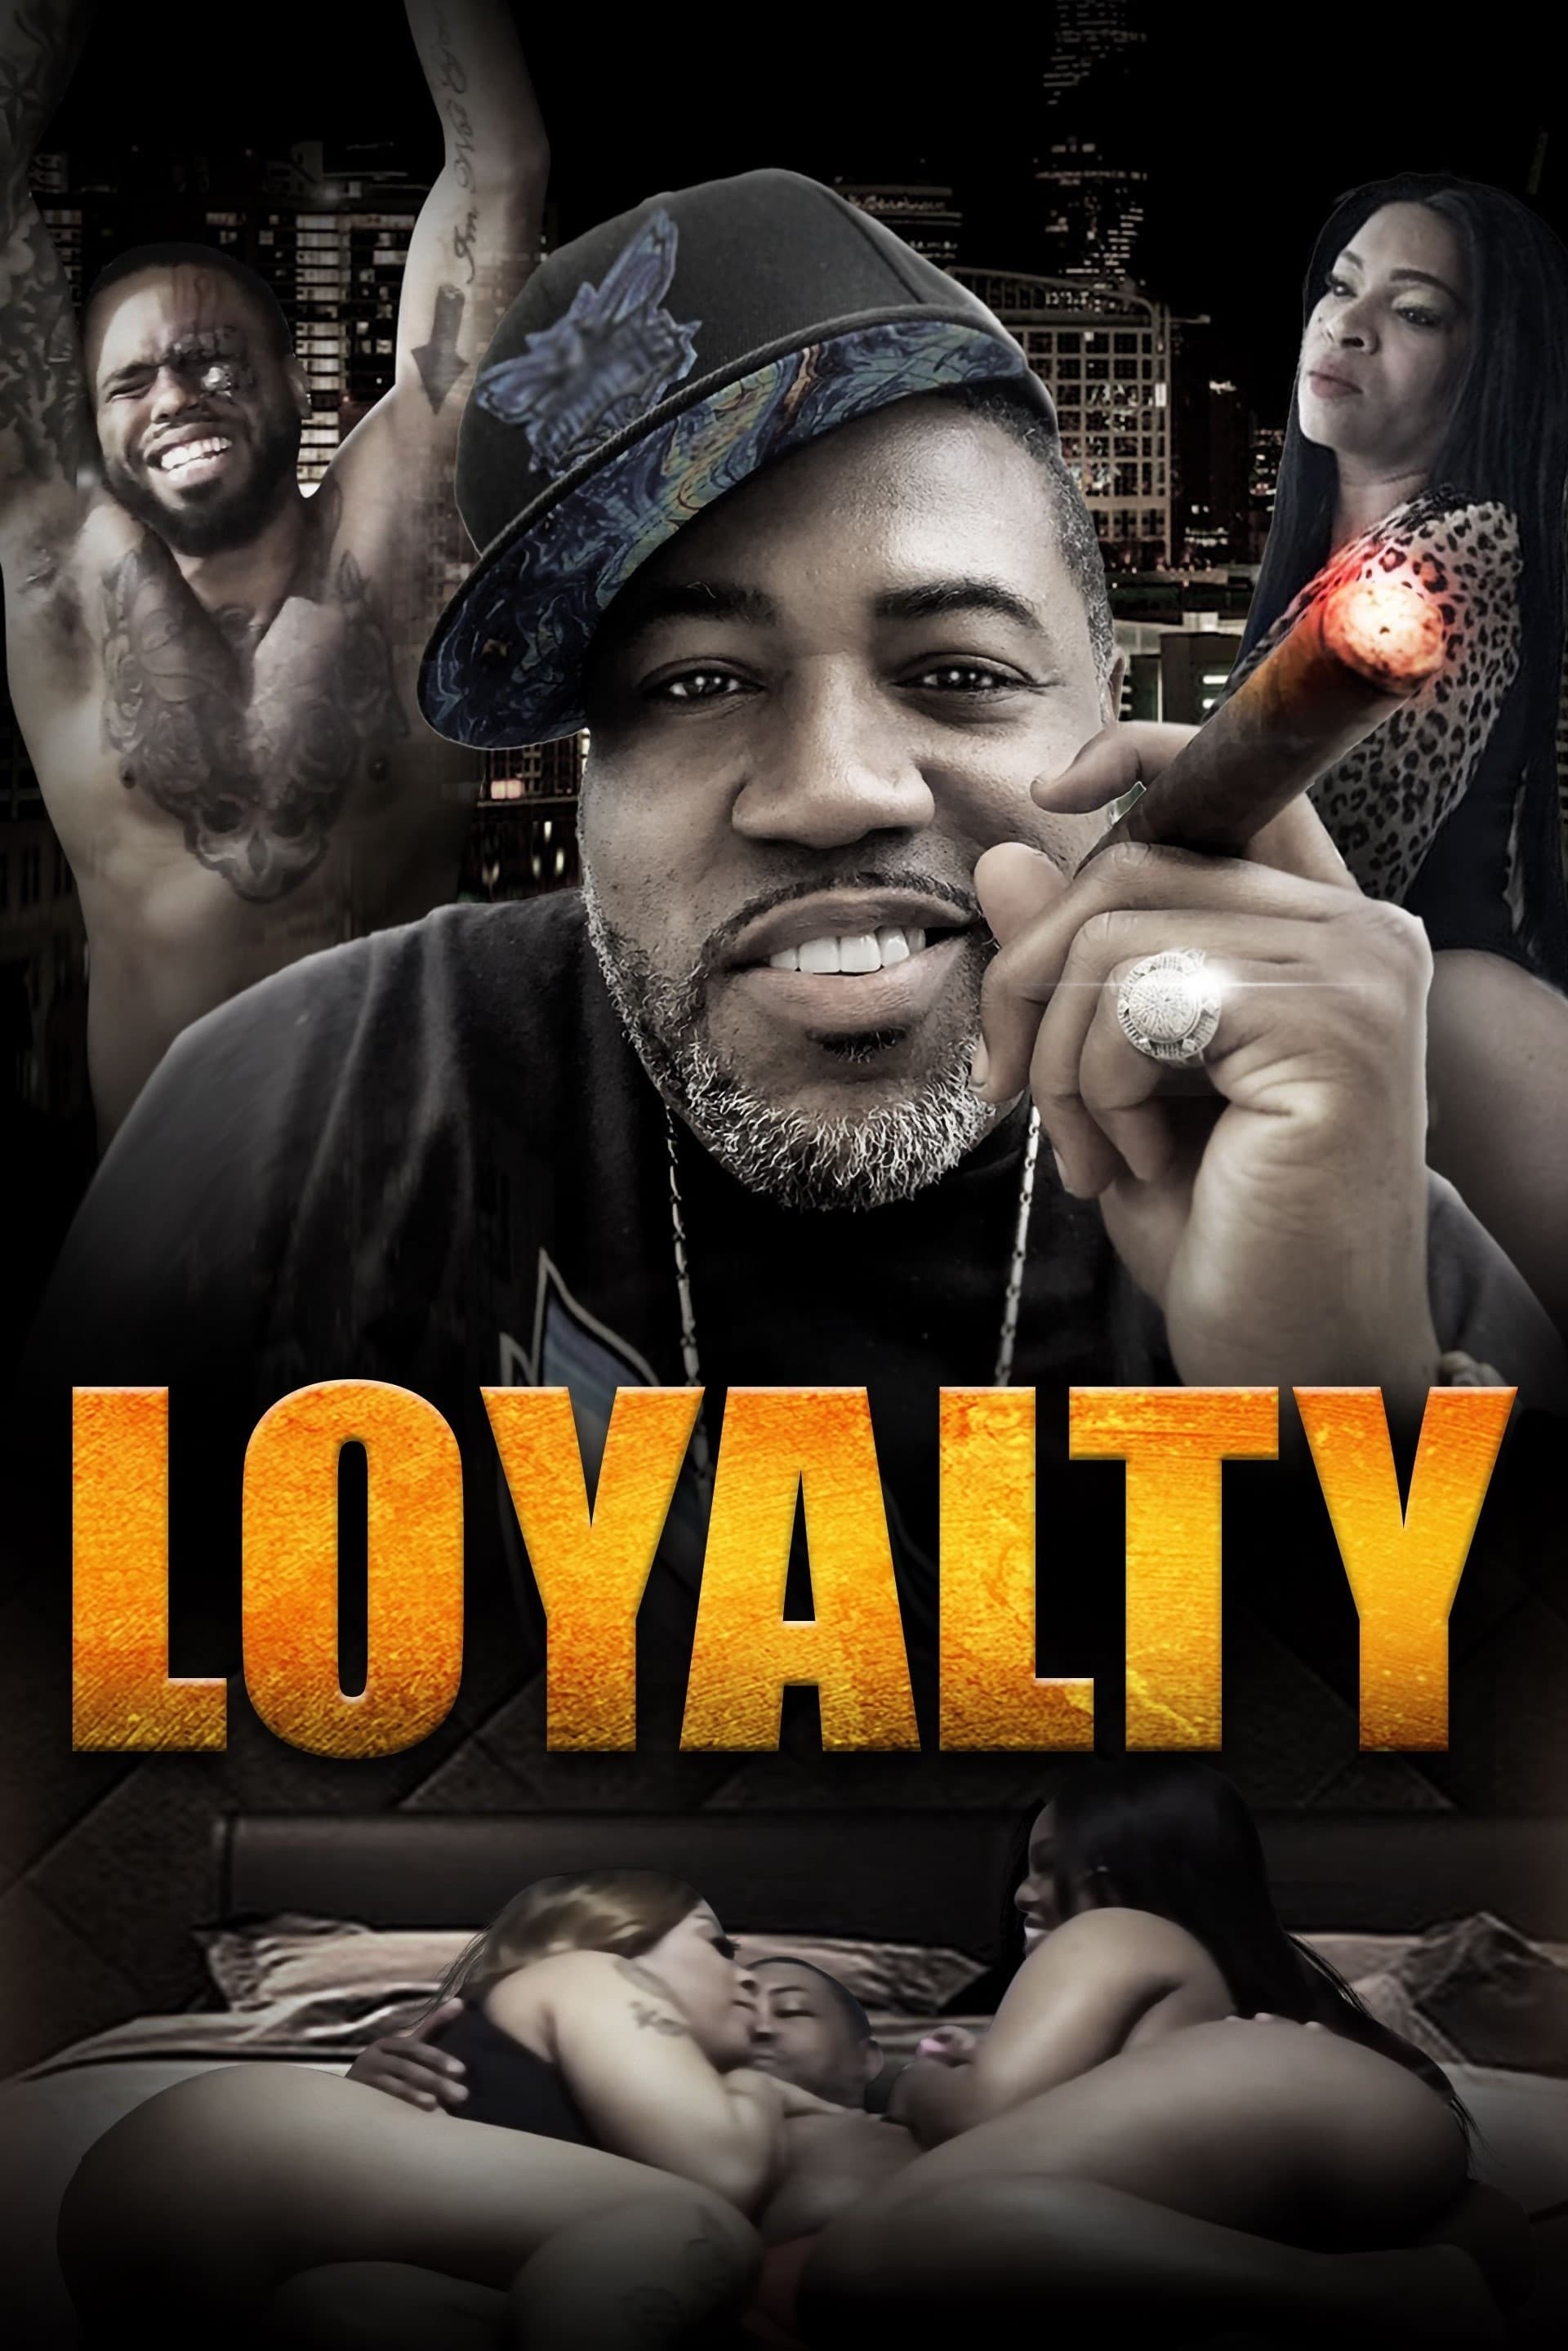 Loyalty